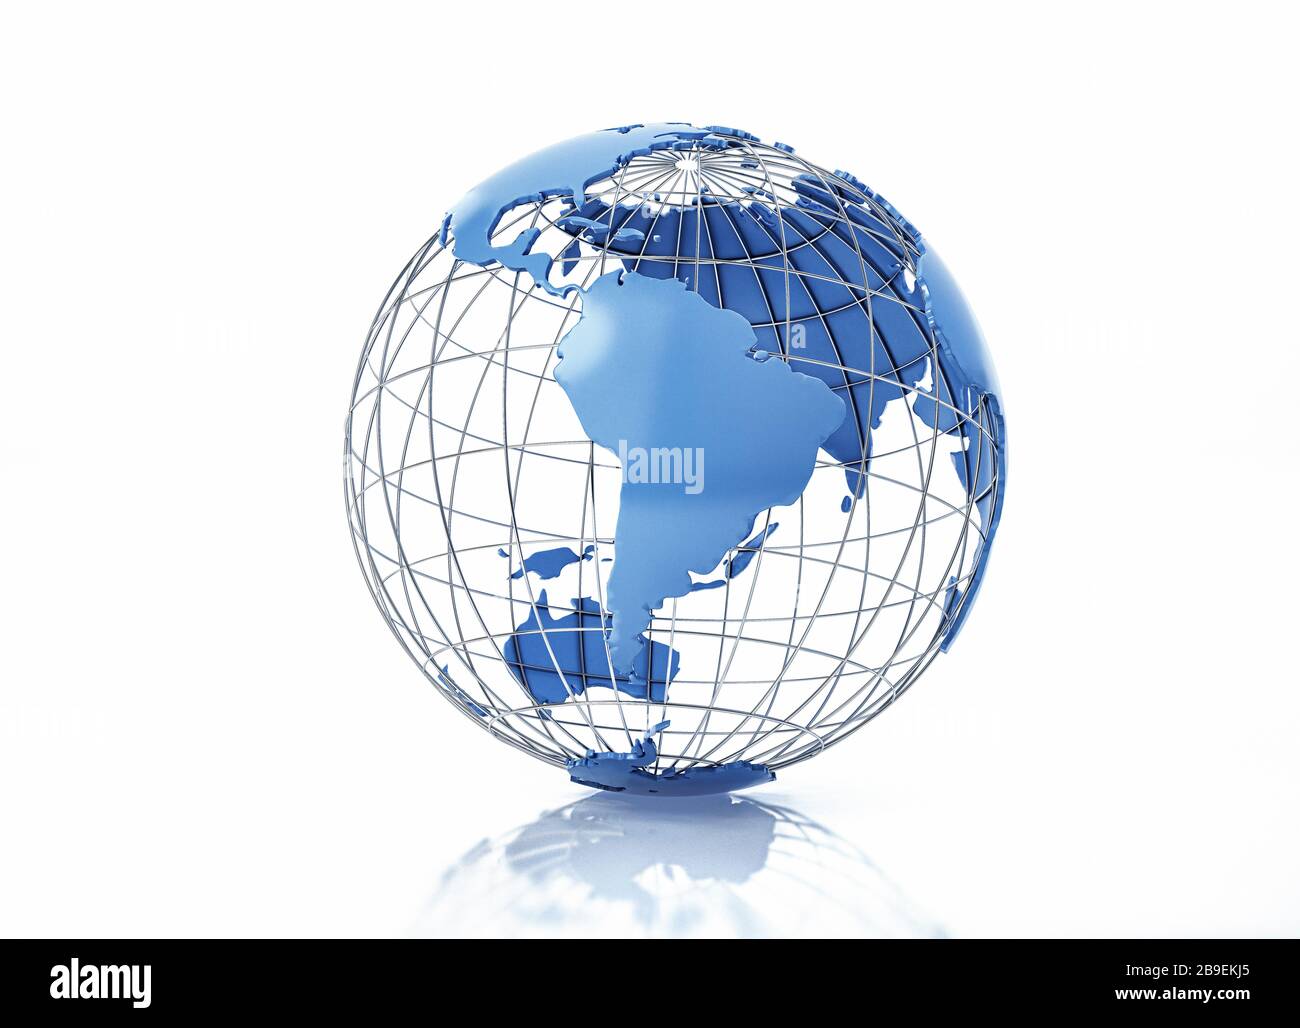 Globe terrestre stylisé en relief avec grille métallique, vue en Amérique du Sud. Banque D'Images